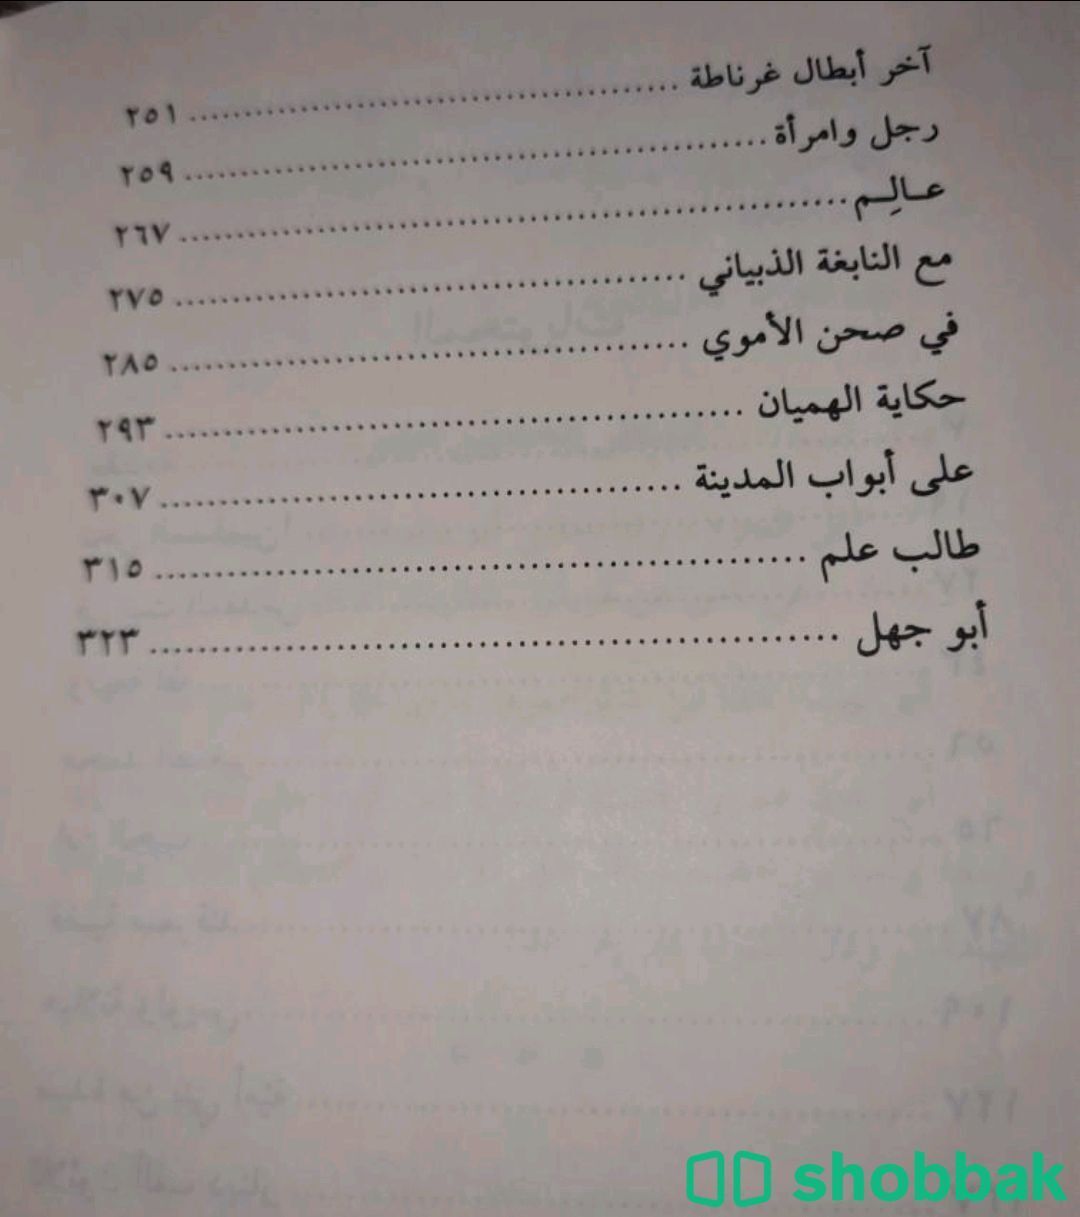 كتاب قصص من التاريخ لعلي الطنطاوي.
       Shobbak Saudi Arabia